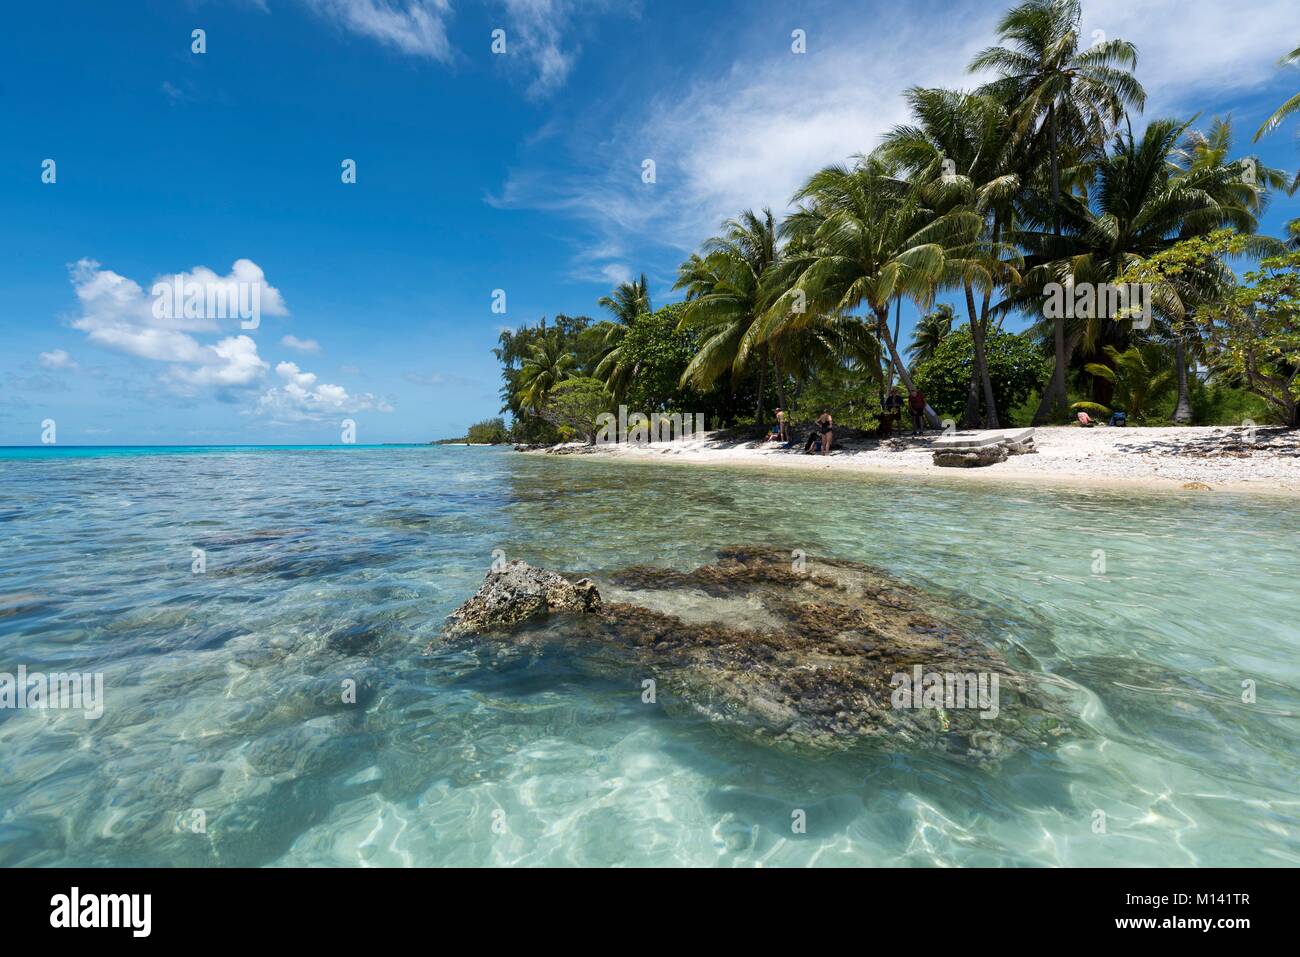 Francia, Polinesia francese, Arcipelago Tuamotu, Rangiroa Atoll, crociere a bordo di Aranui 5 miscelati nave cargo, patata corallo e palme Foto Stock